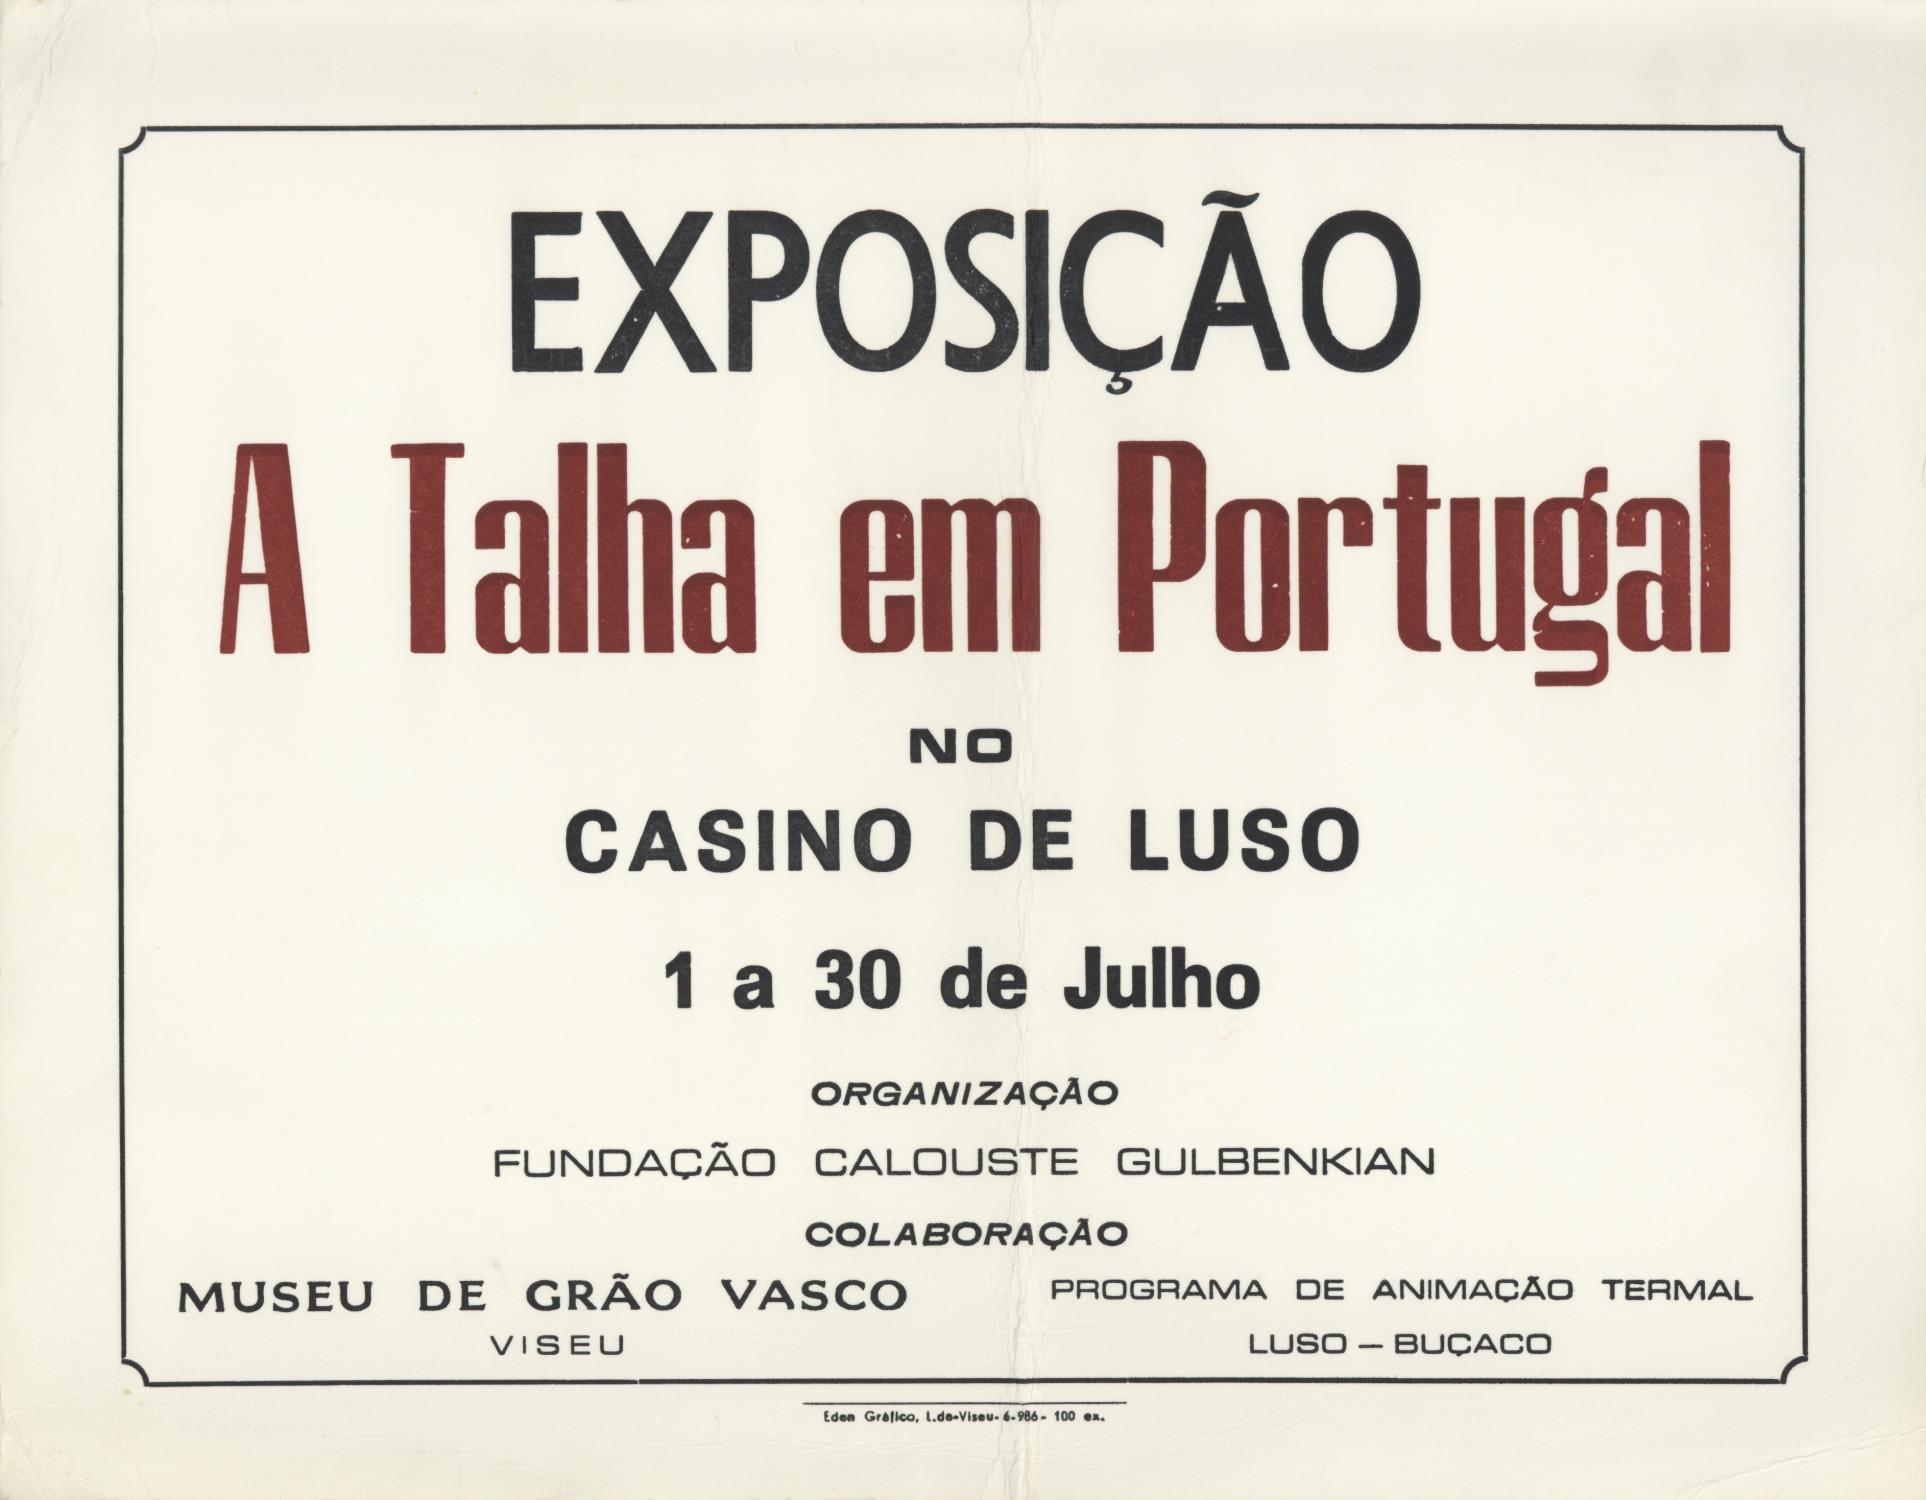 A Talha em Portugal